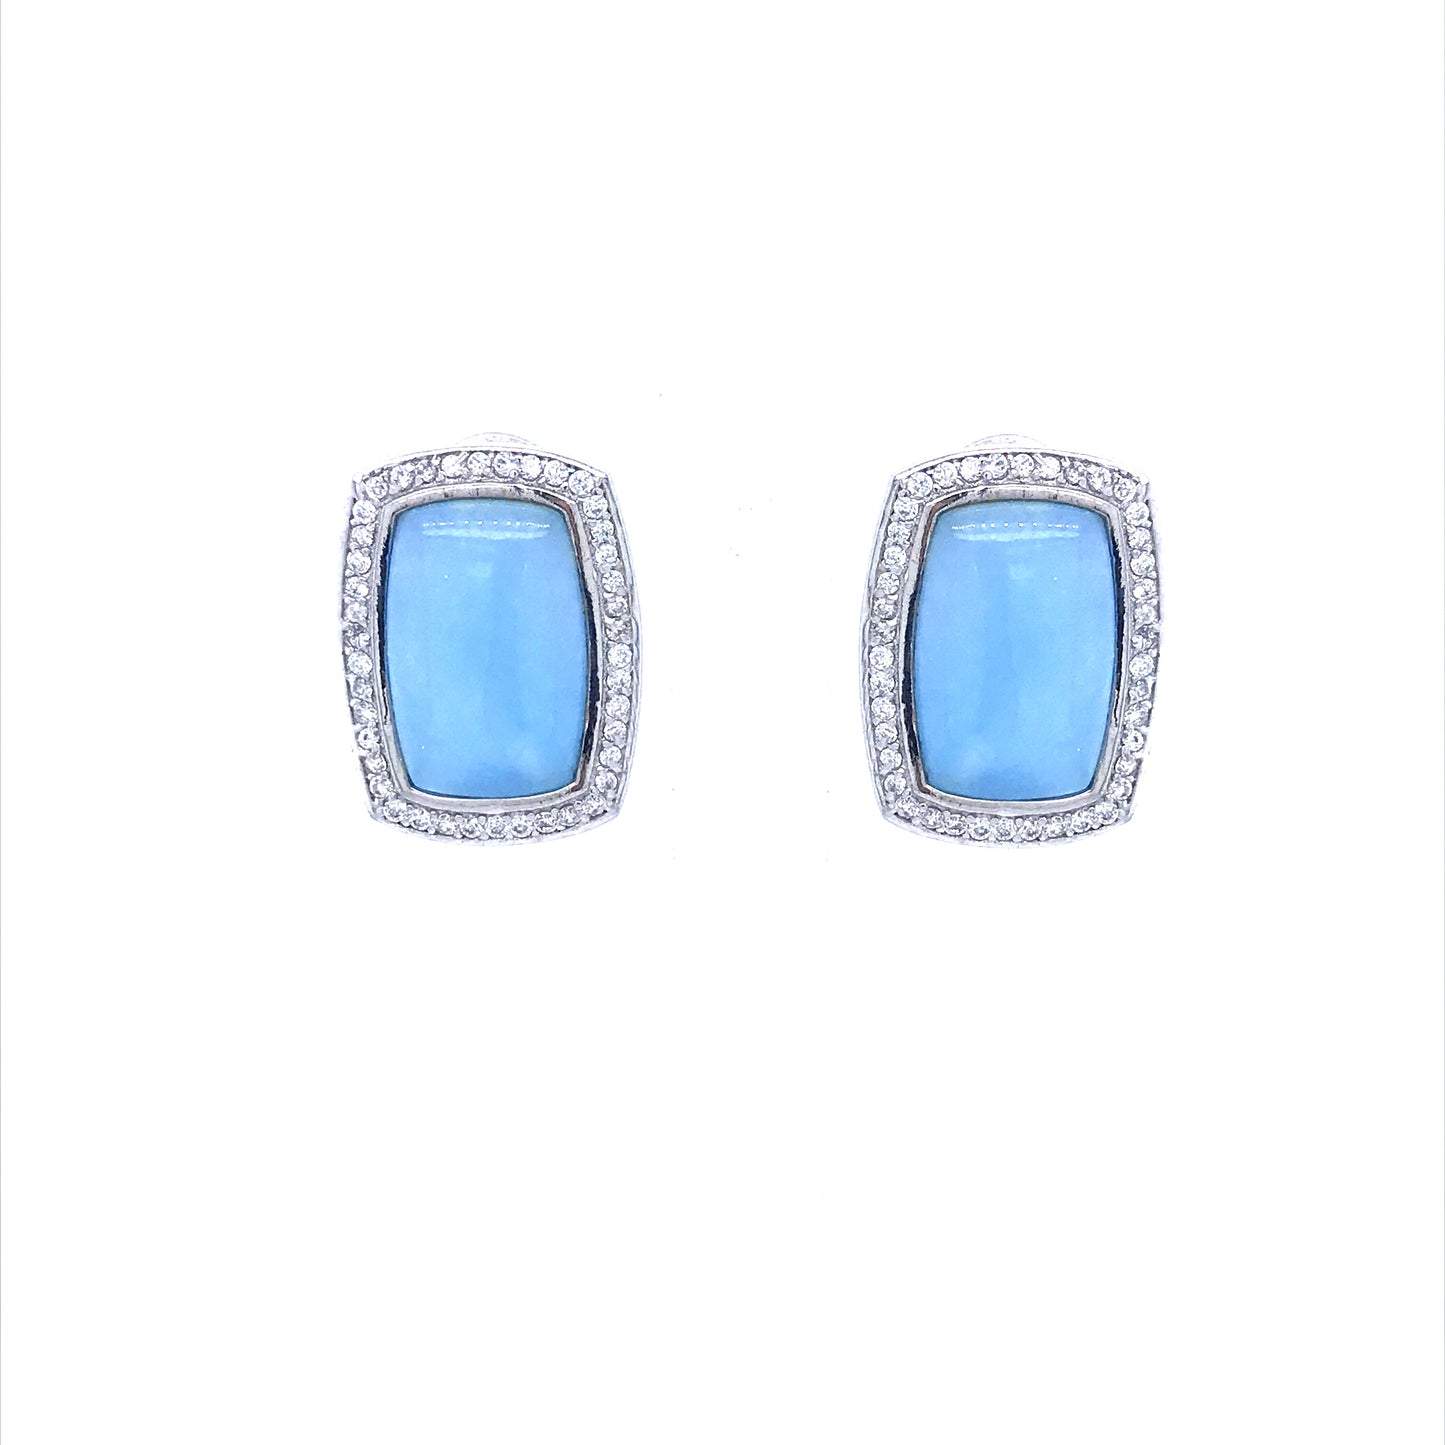 Sterling Silver Blue Stud Earrings - HK Jewels